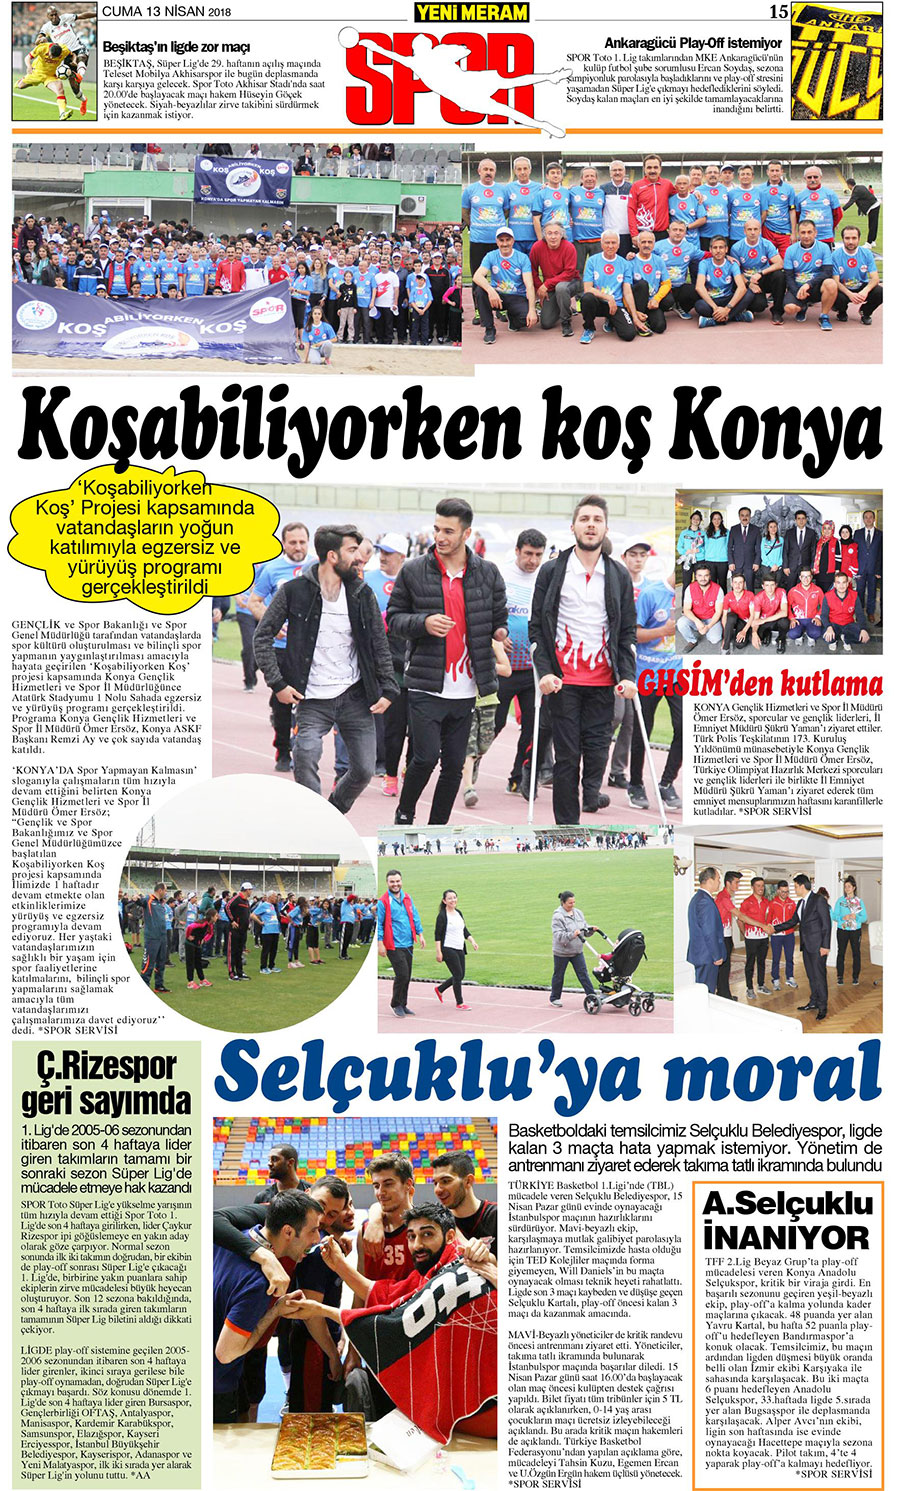 13 Nisan 2018 Yeni Meram Gazetesi